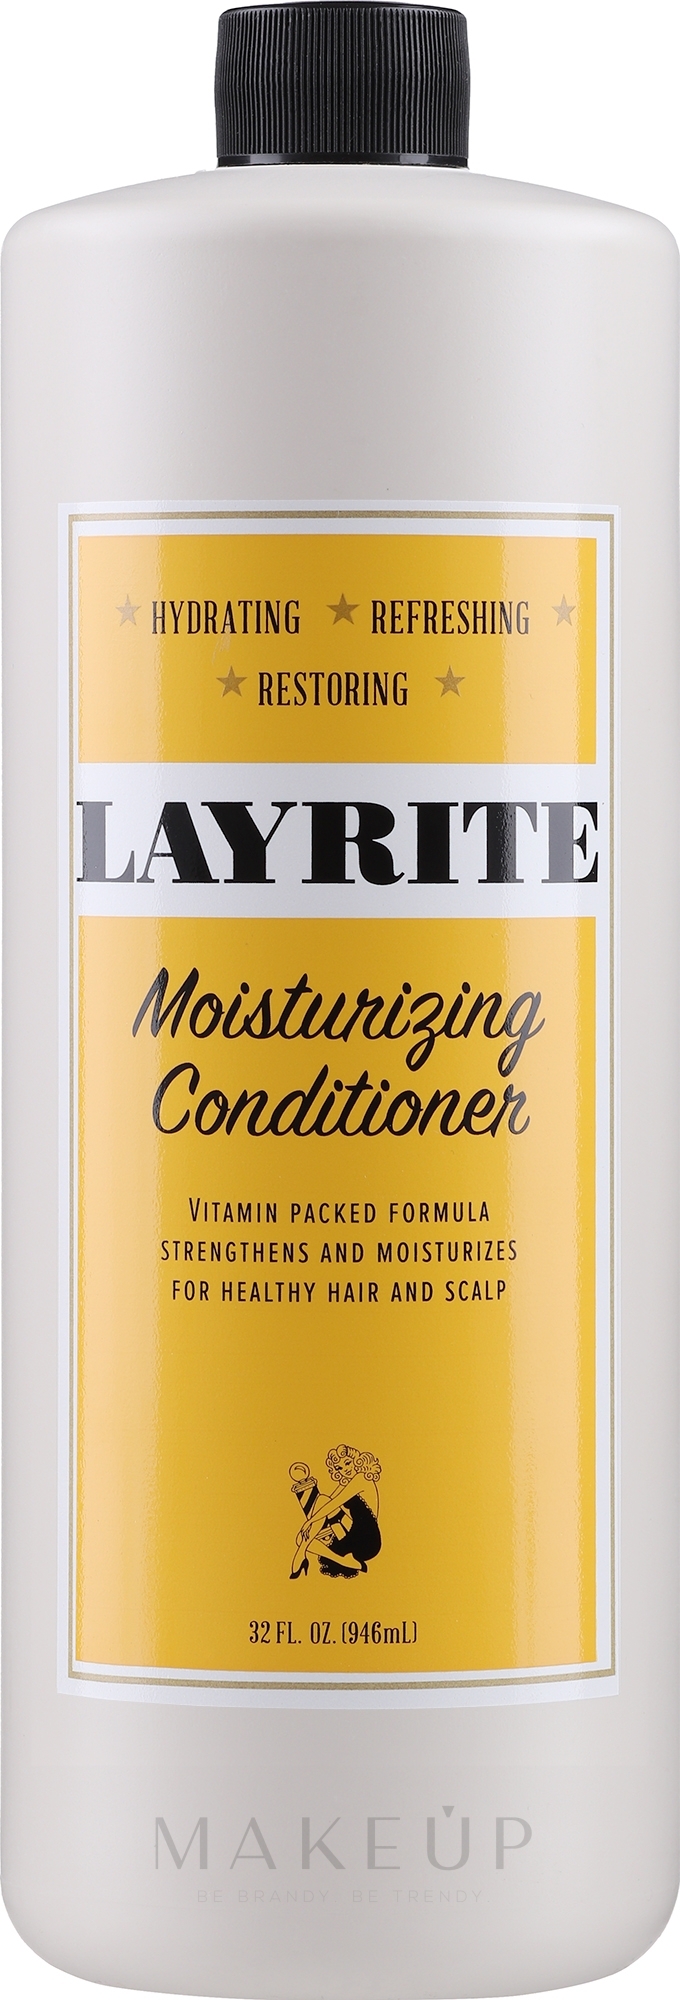 Feuchtigkeitsspendende Haarspülung für täglichen Gebracuh - Layrite Moisturising Conditioner — Bild 1000 ml